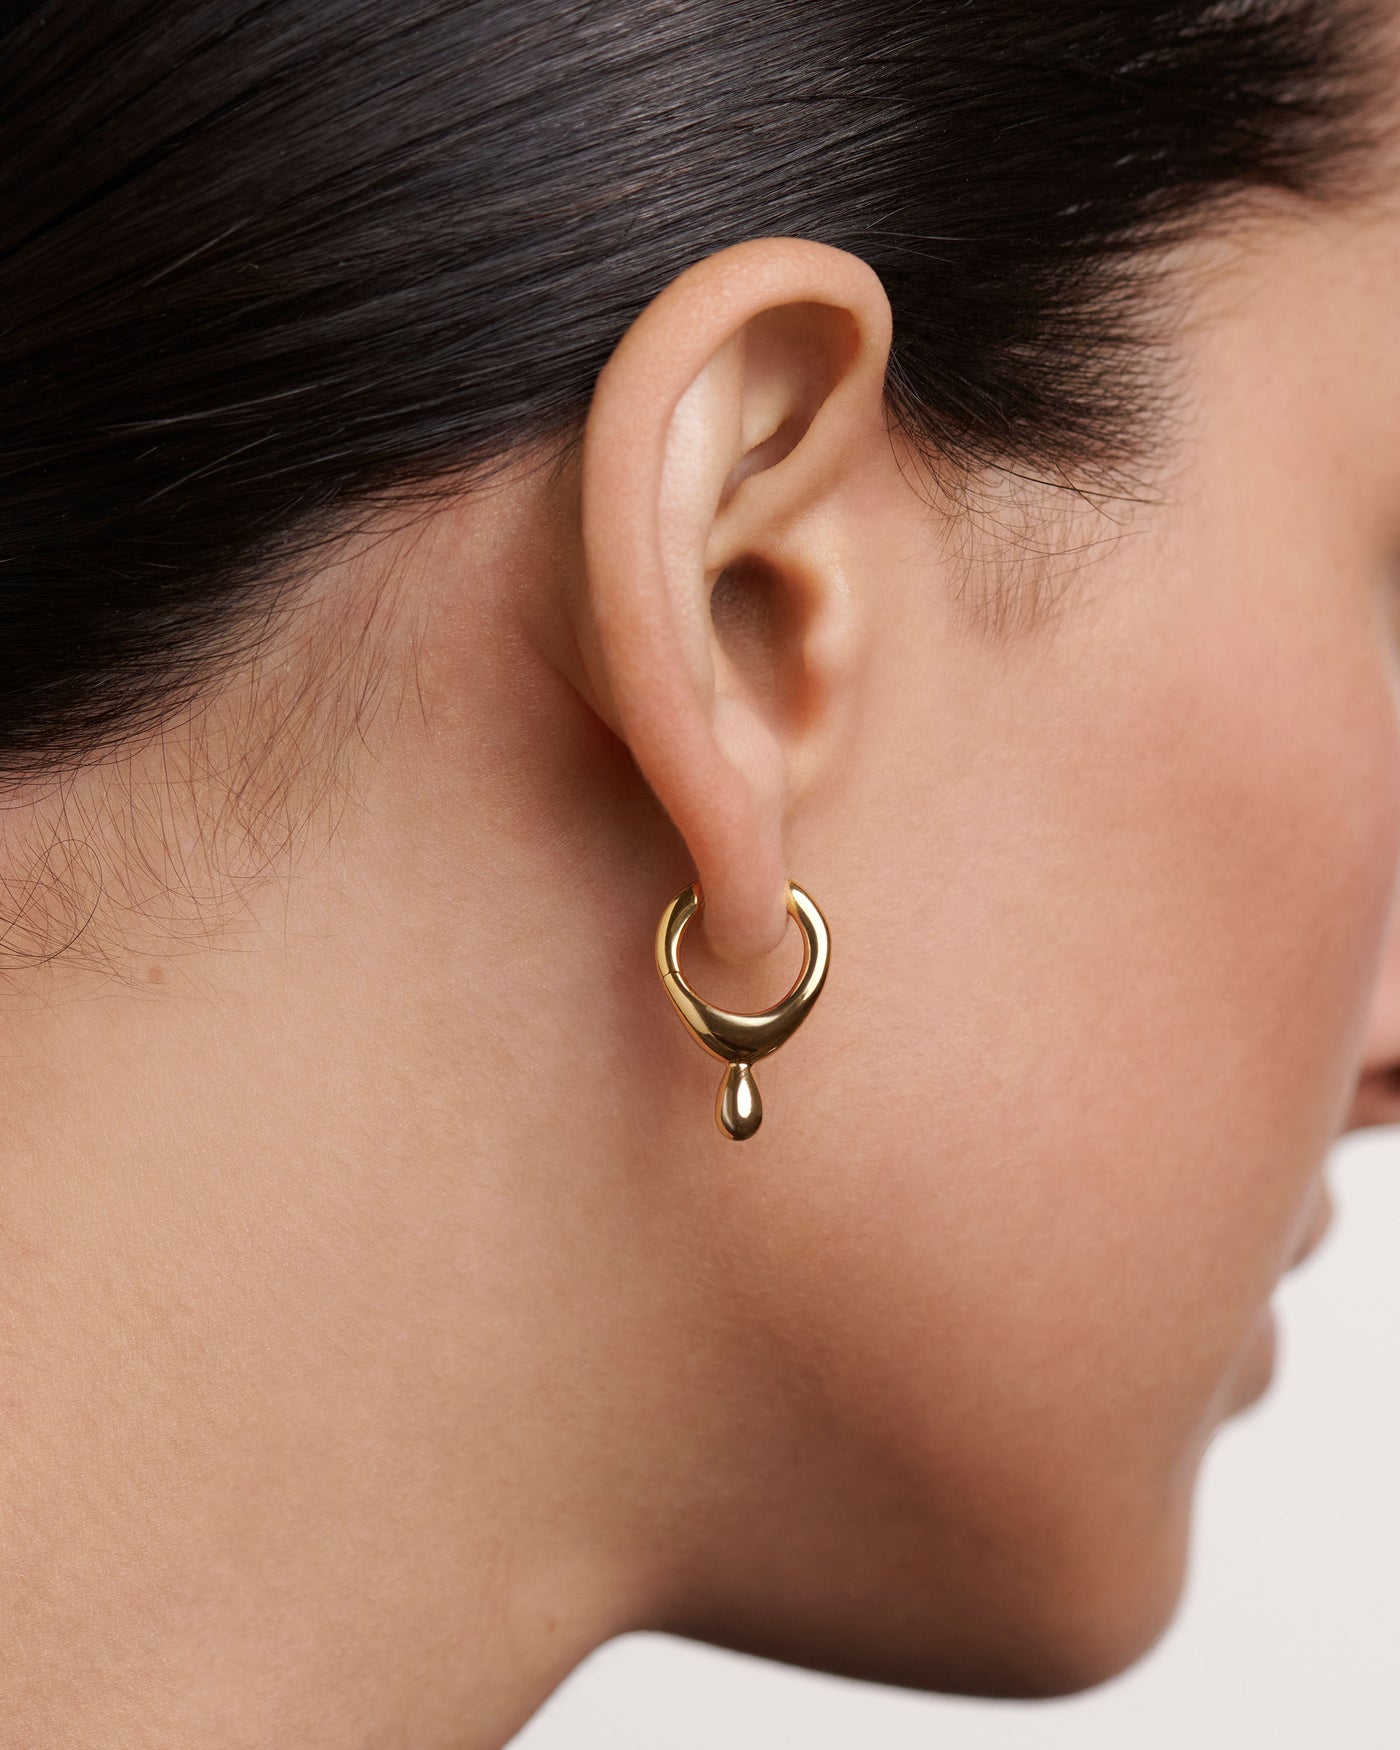   earrings